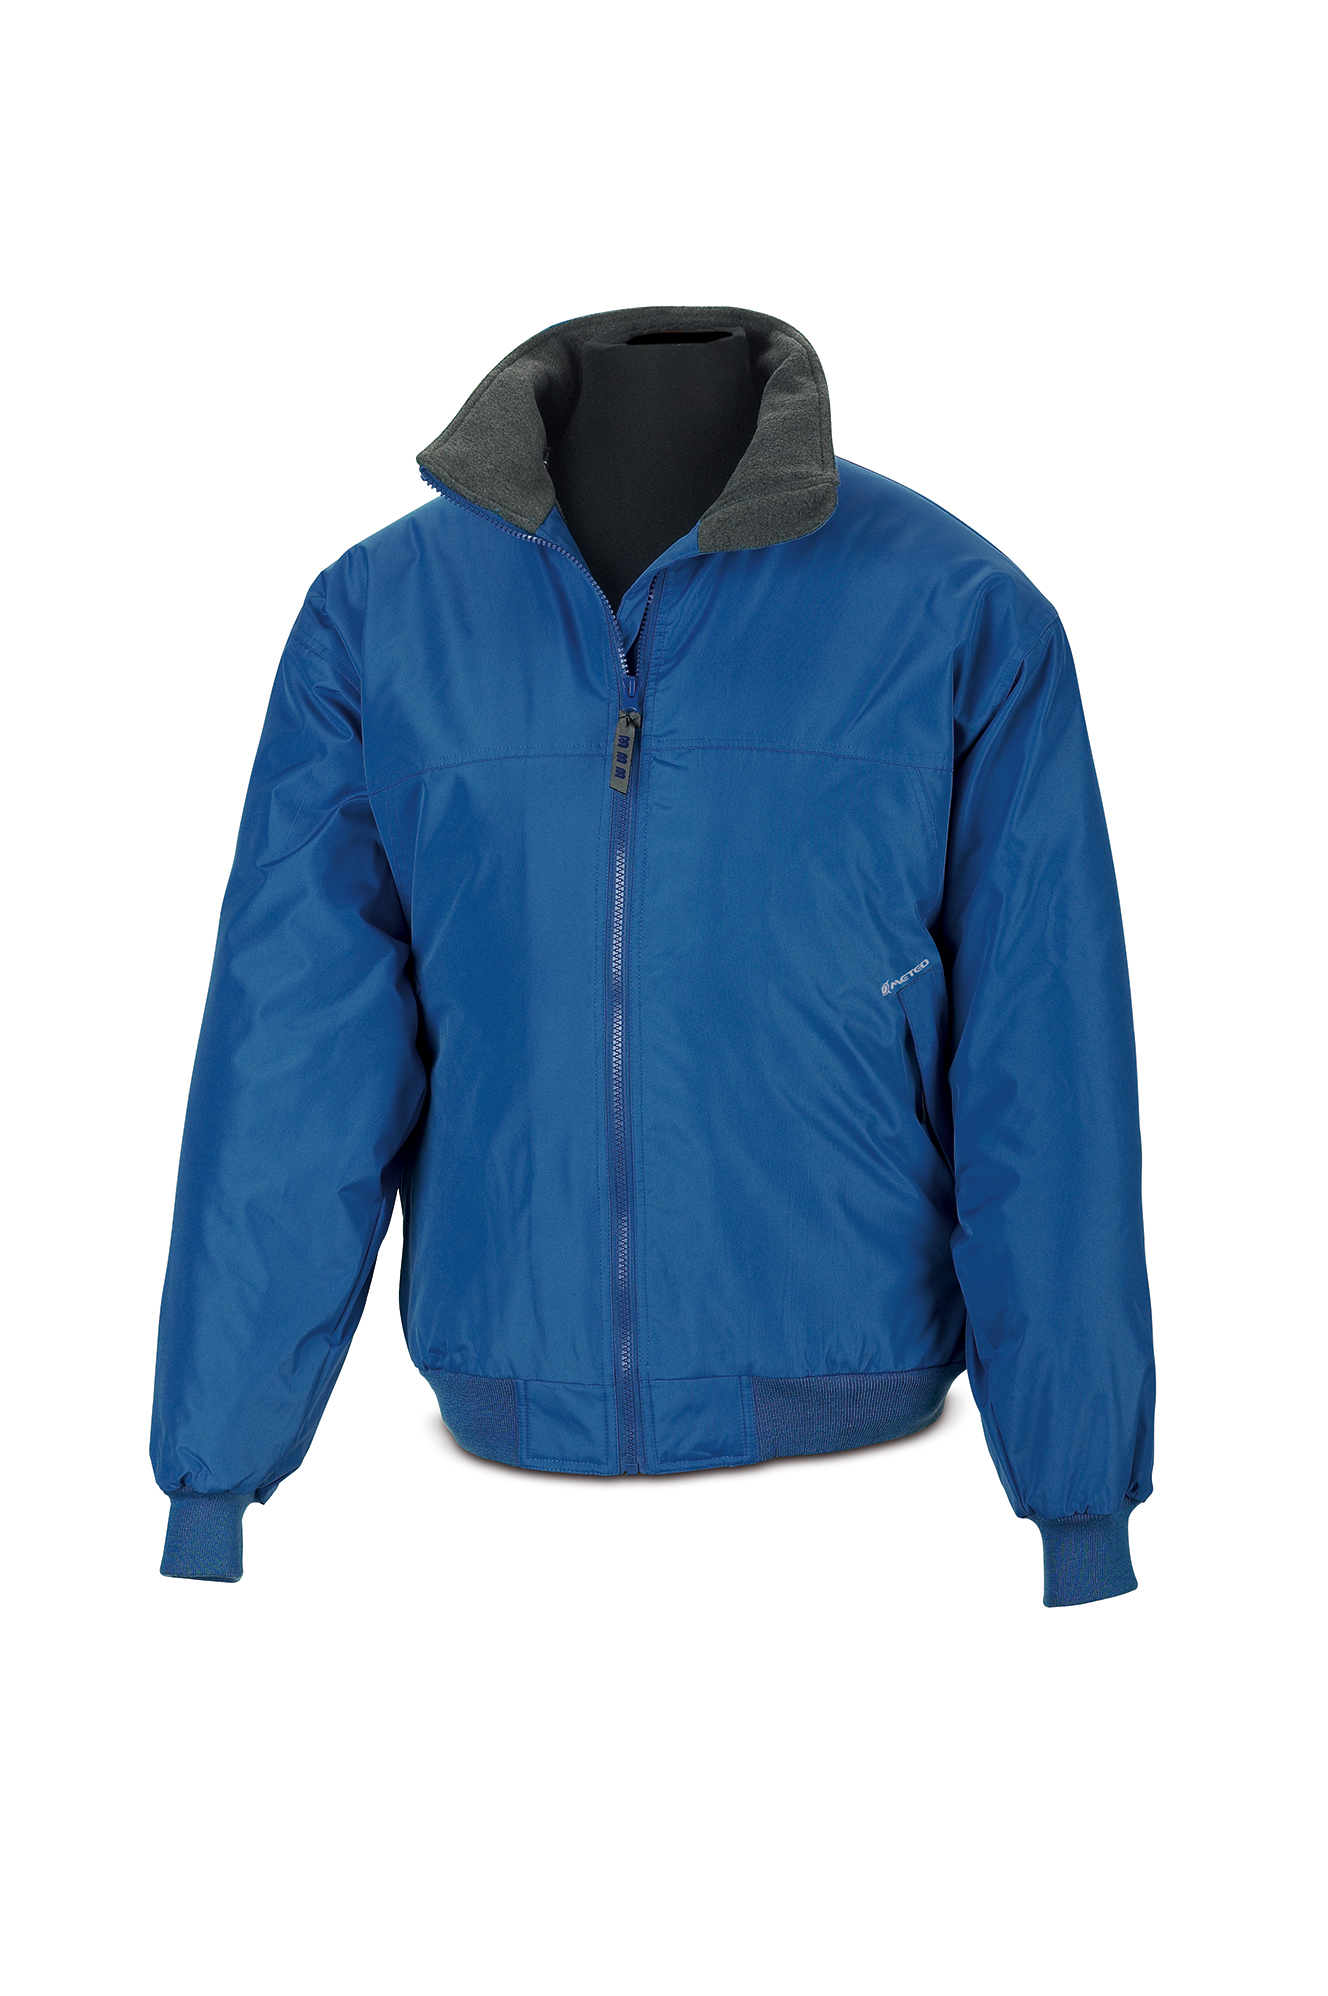 288-CPAZ Proteção e chuva Blusão Blusão NÁUTICA. Cor azulina.